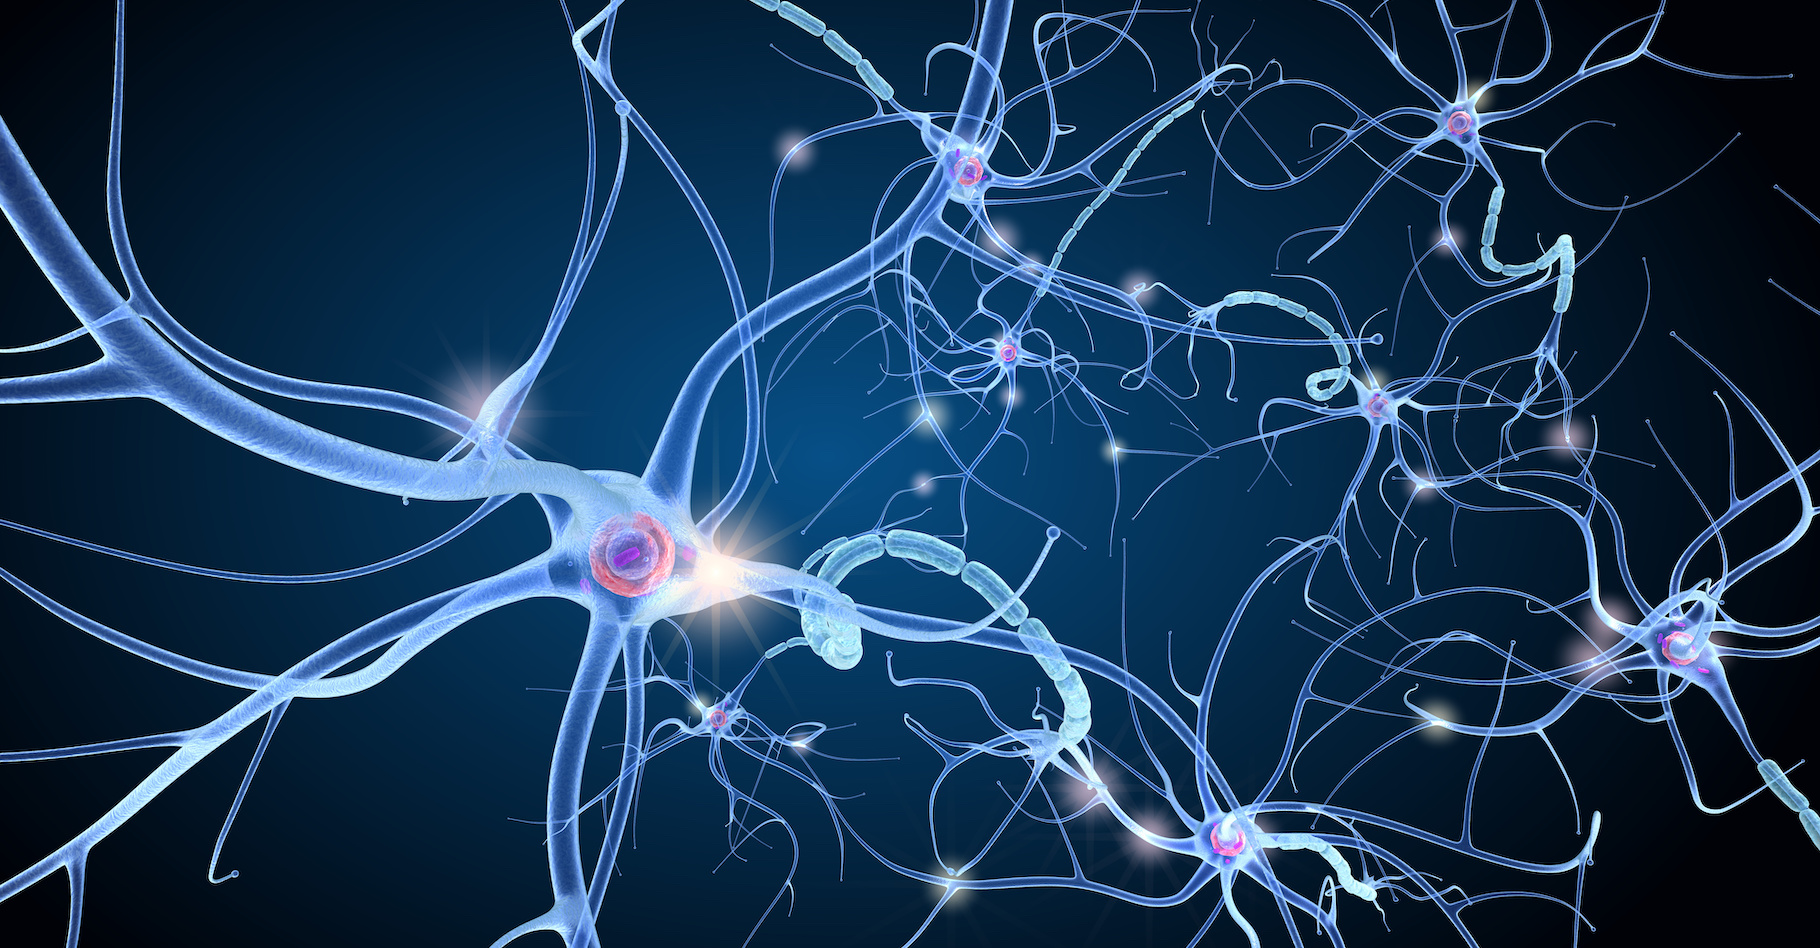 Les neurones sont autant de relais des messages nerveux qui circulent dans notre cerveau. Grâce à des neurones artificiels, comme ceux proposés par les chercheurs de l’université de Bath (Royaume-Uni), de toutes nouvelles perspectives thérapeutiques pourraient être envisagées. © Alexandr Mitiuc, Adobe Stock